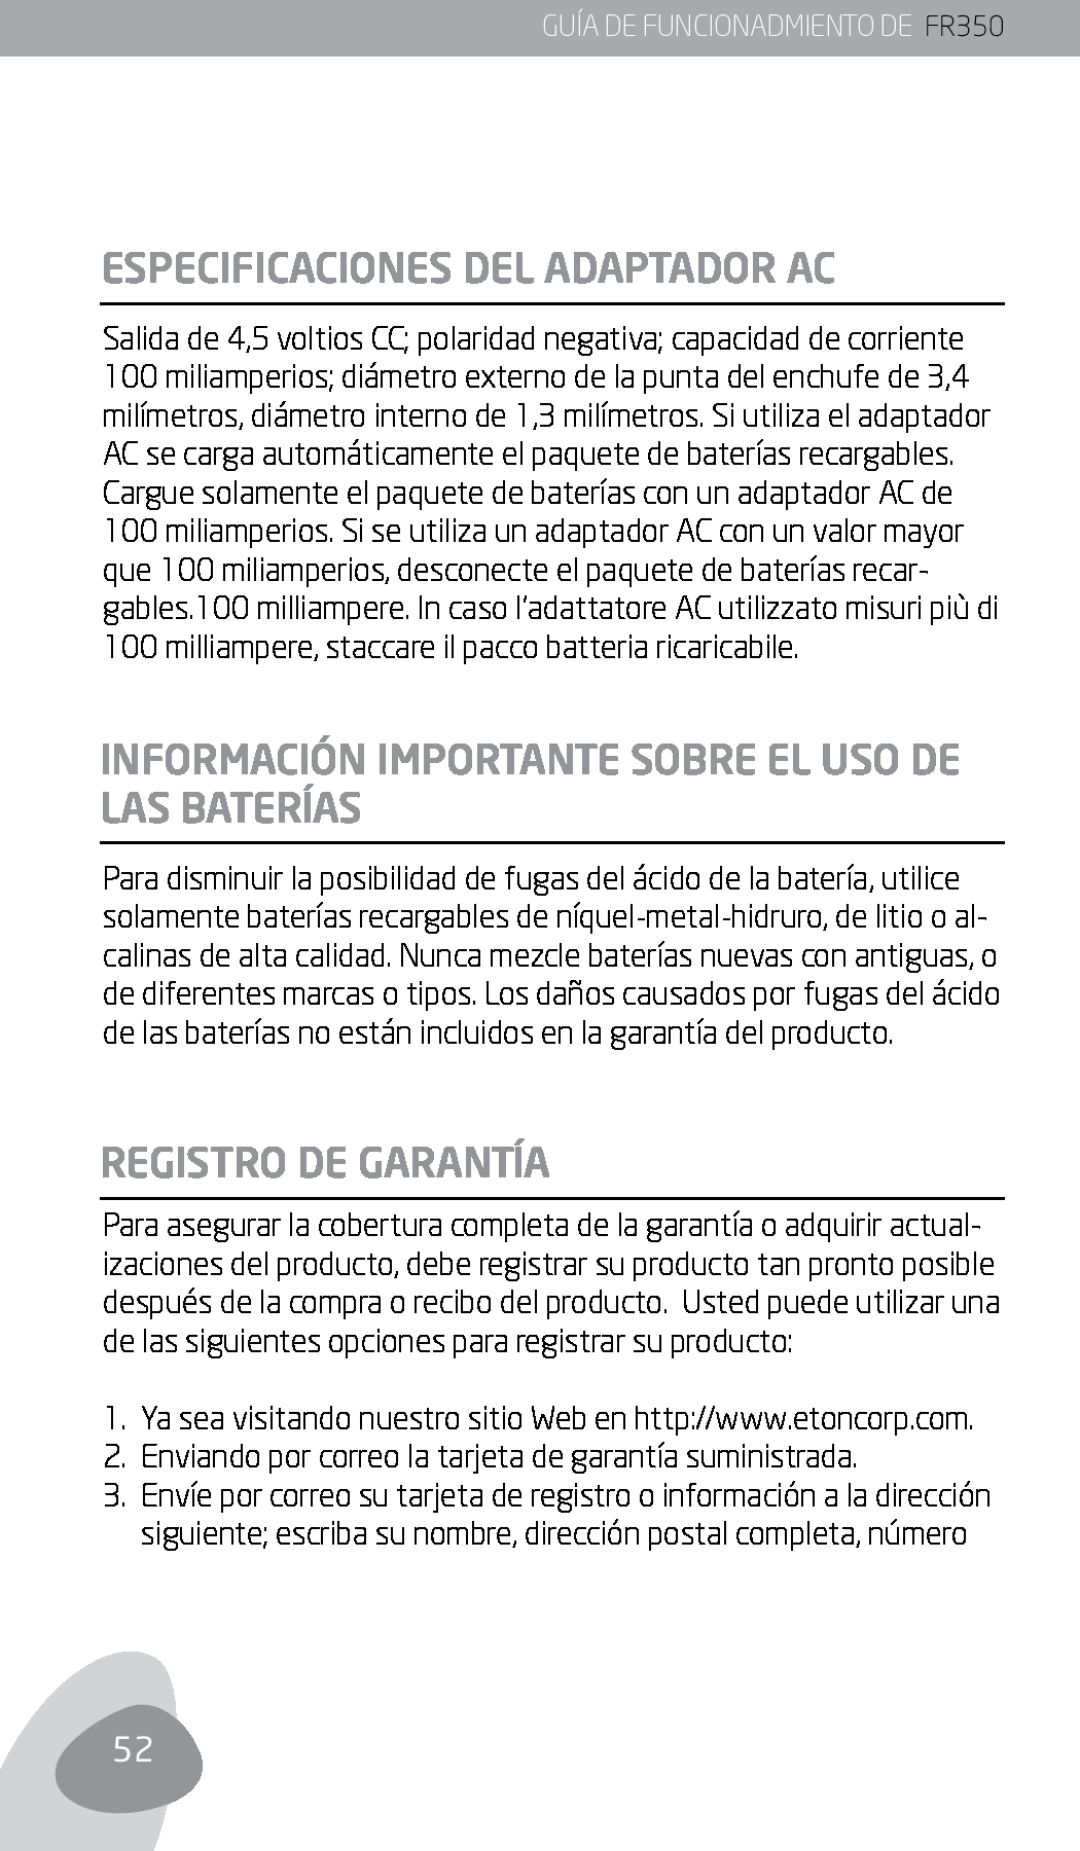 Eton owner manual Especificaciones Del Adaptador Ac, Registro De Garantía, GUÍA DE FUNCIONADMIENTO DE FR350 